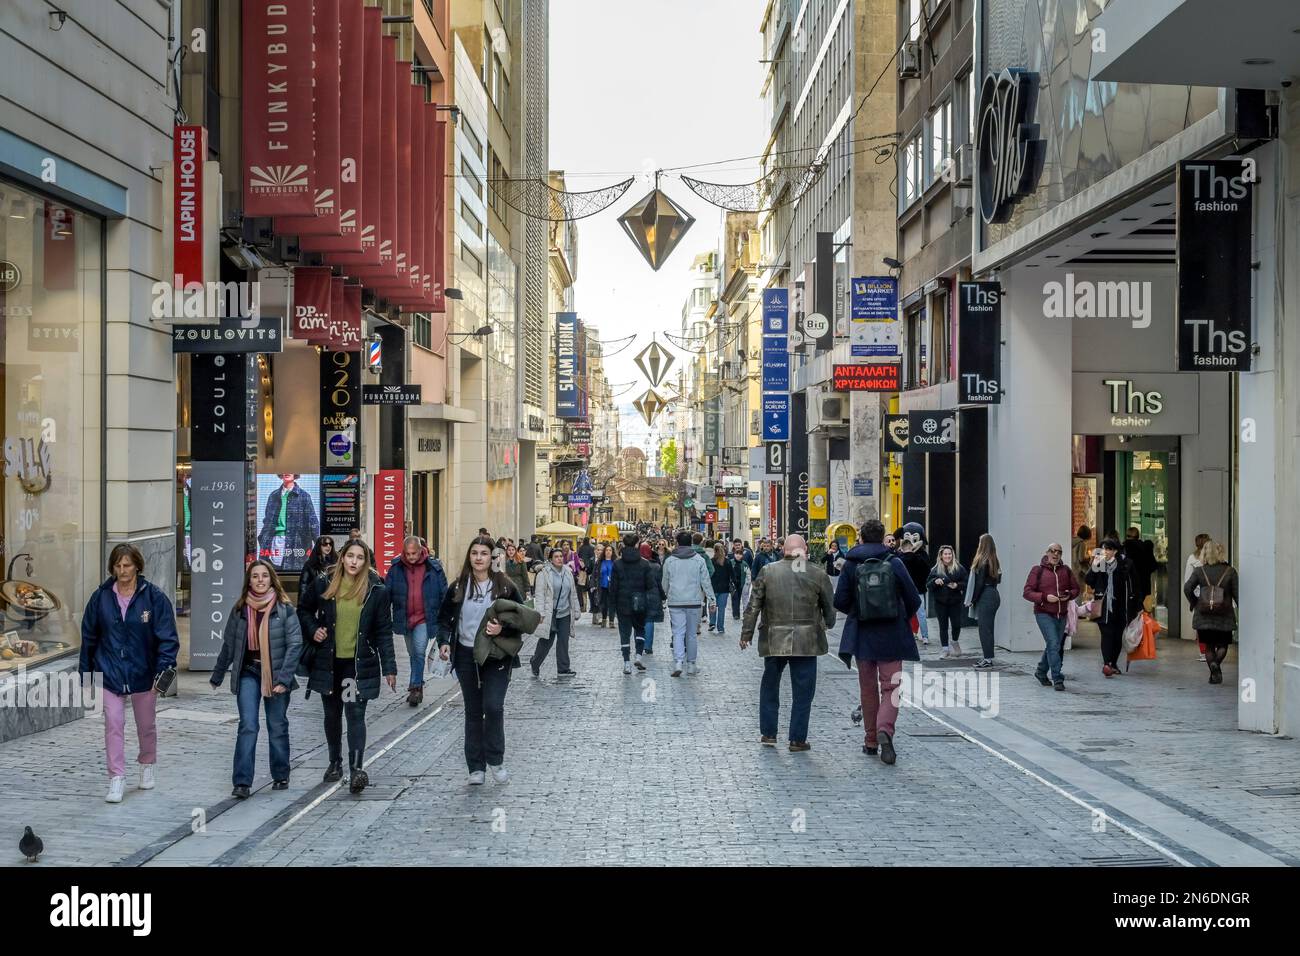 Einkaufstraße Ermou, Athen, Griechenland Foto Stock